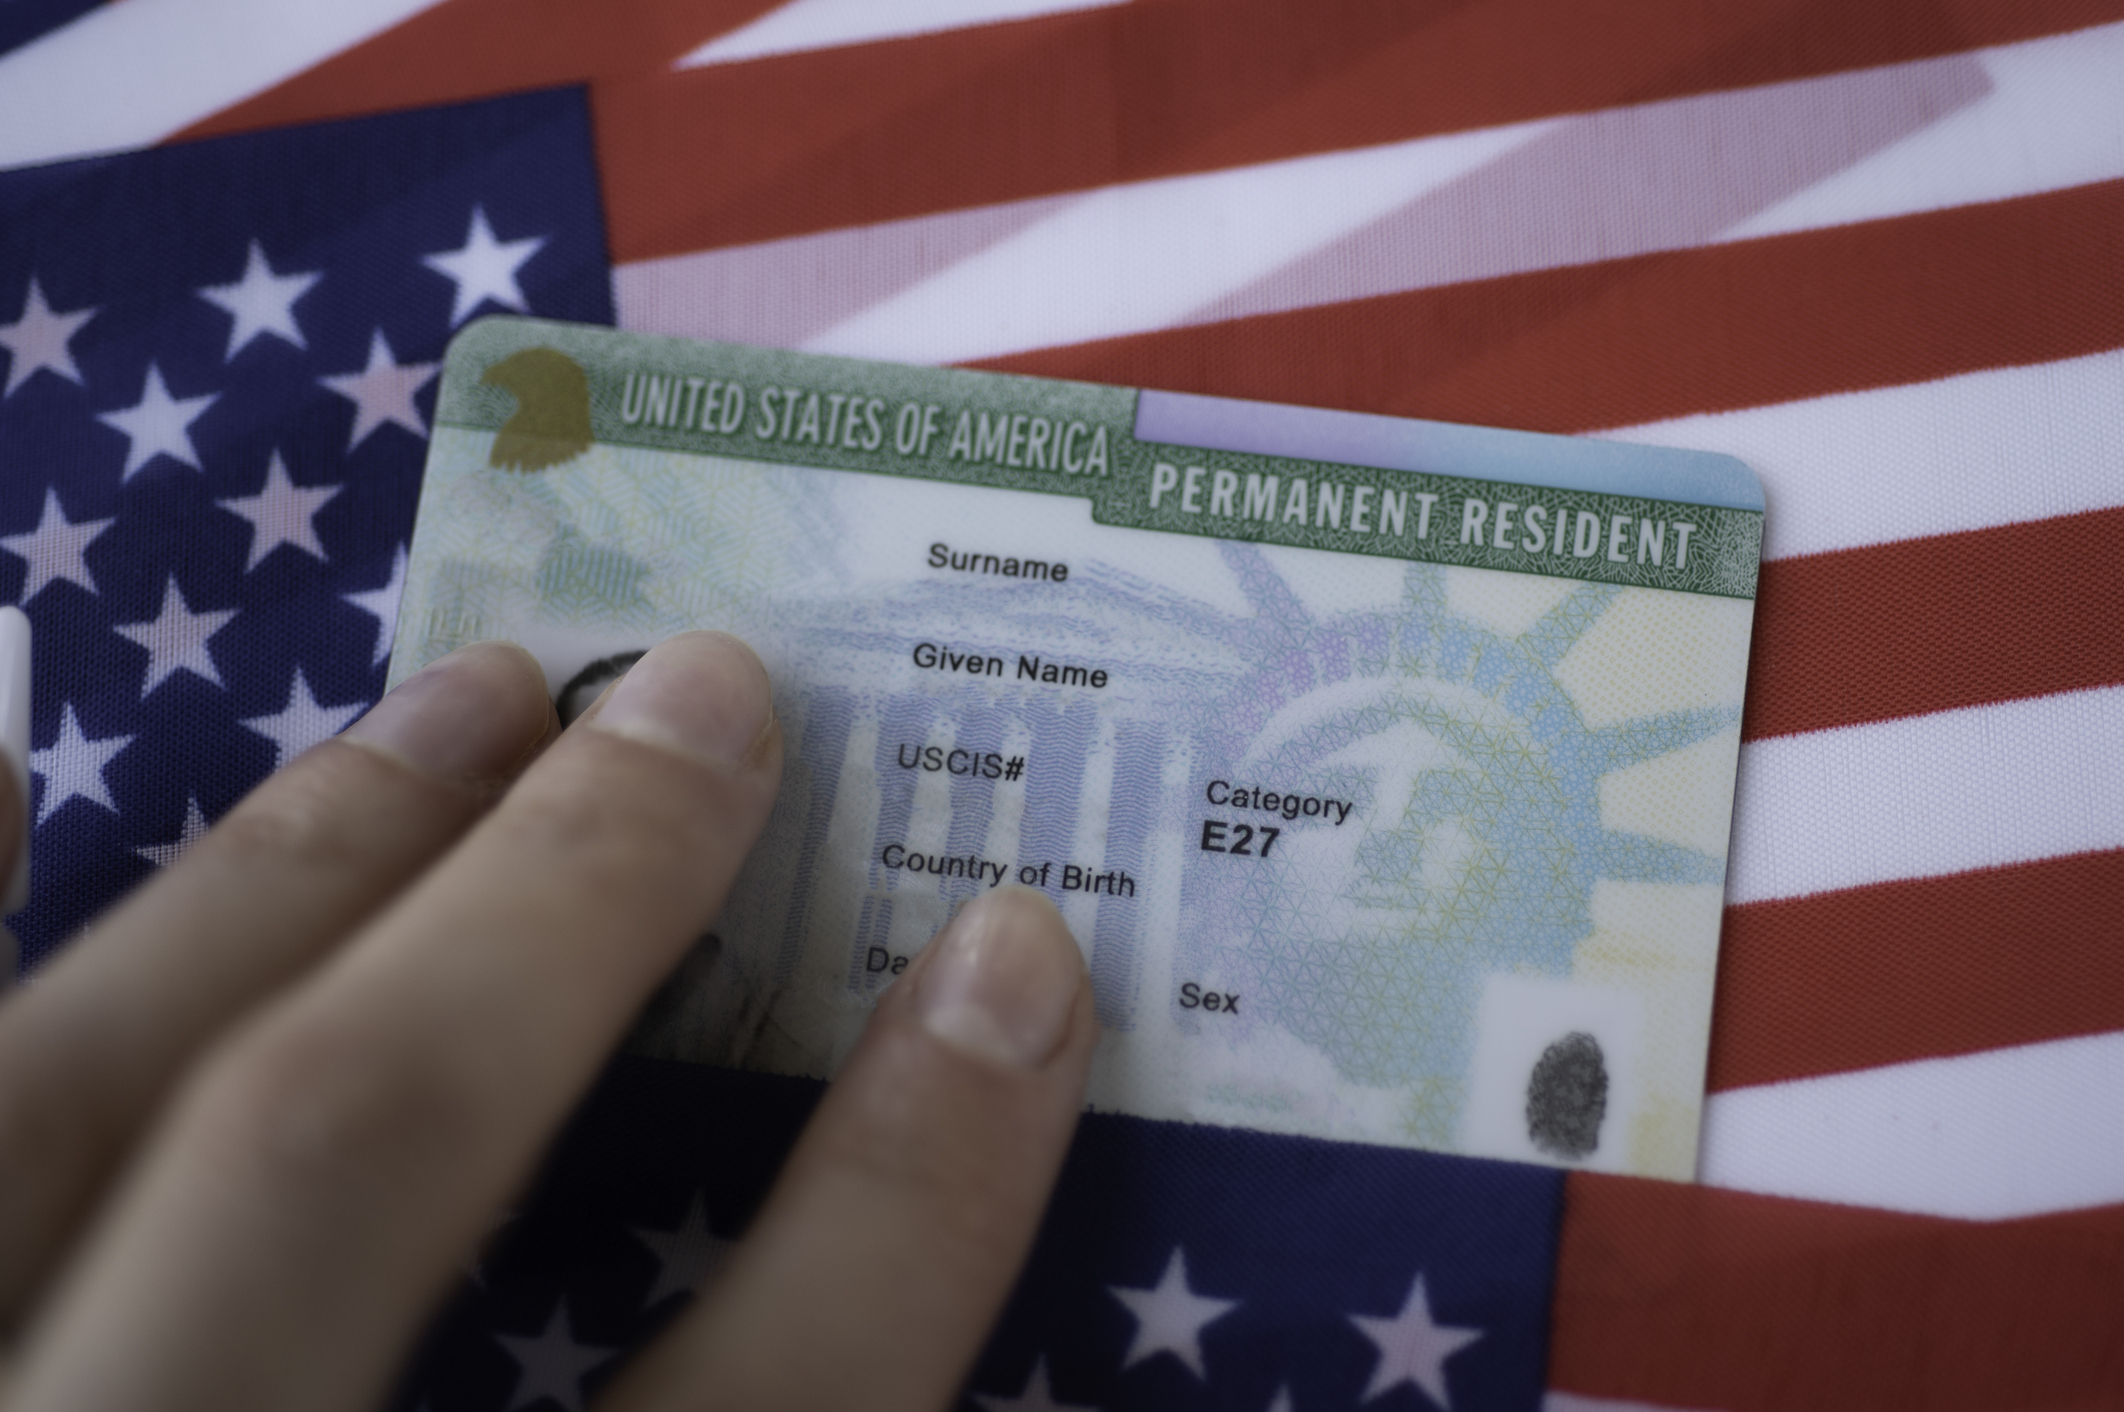 Comprar imóvel nos EUA ganha Green Card?